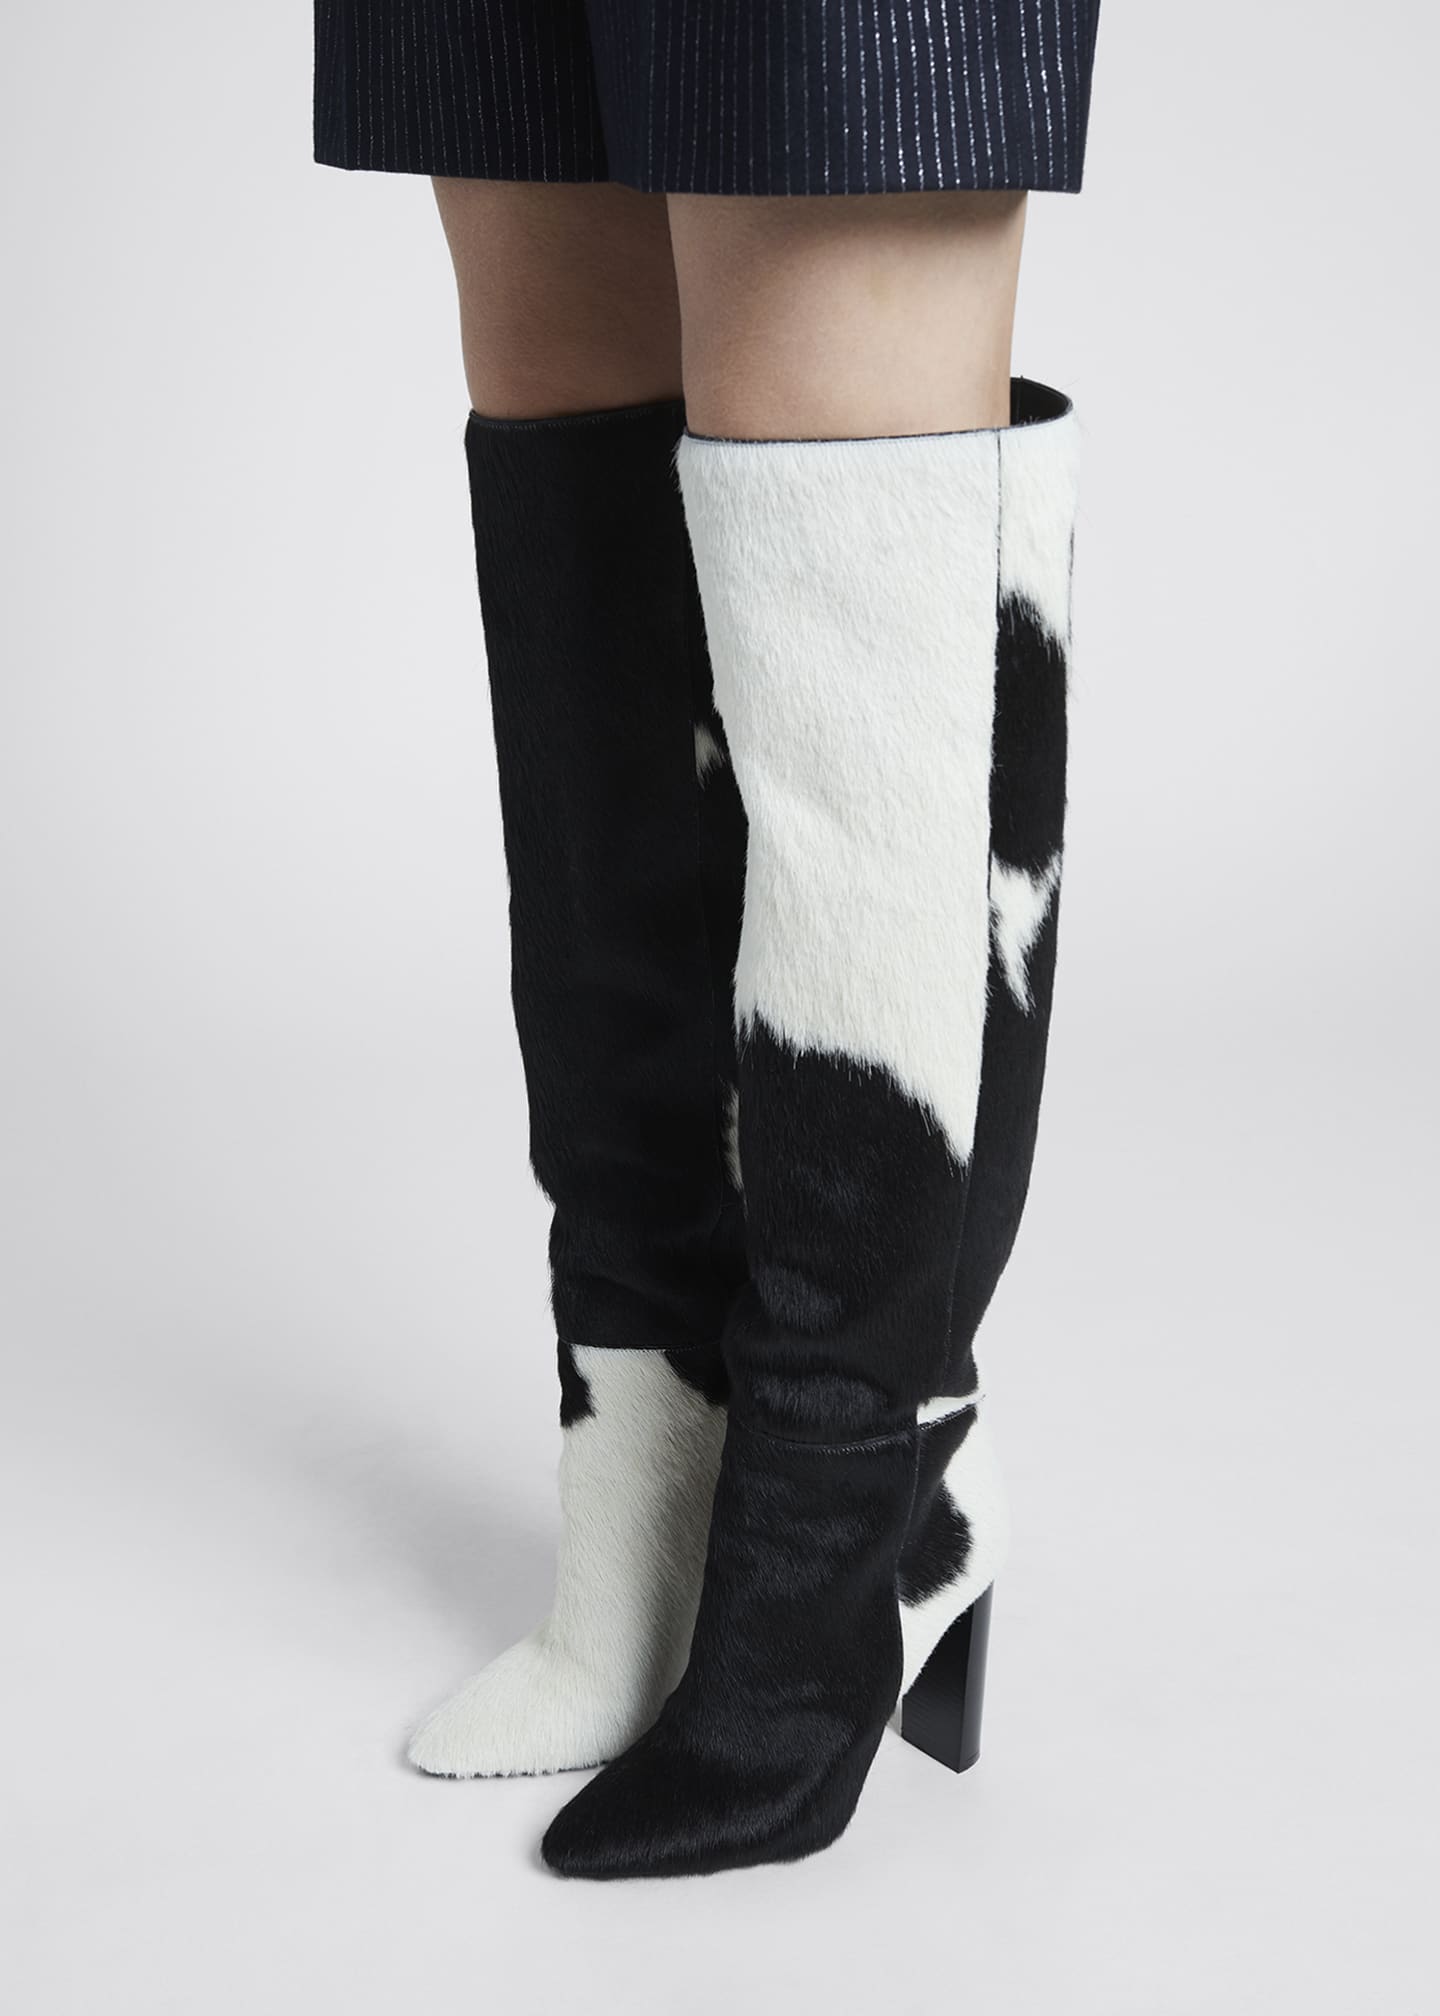 Saint Laurent Bicolor Fur Over-the-Knee Boots - Bergdorf Goodman